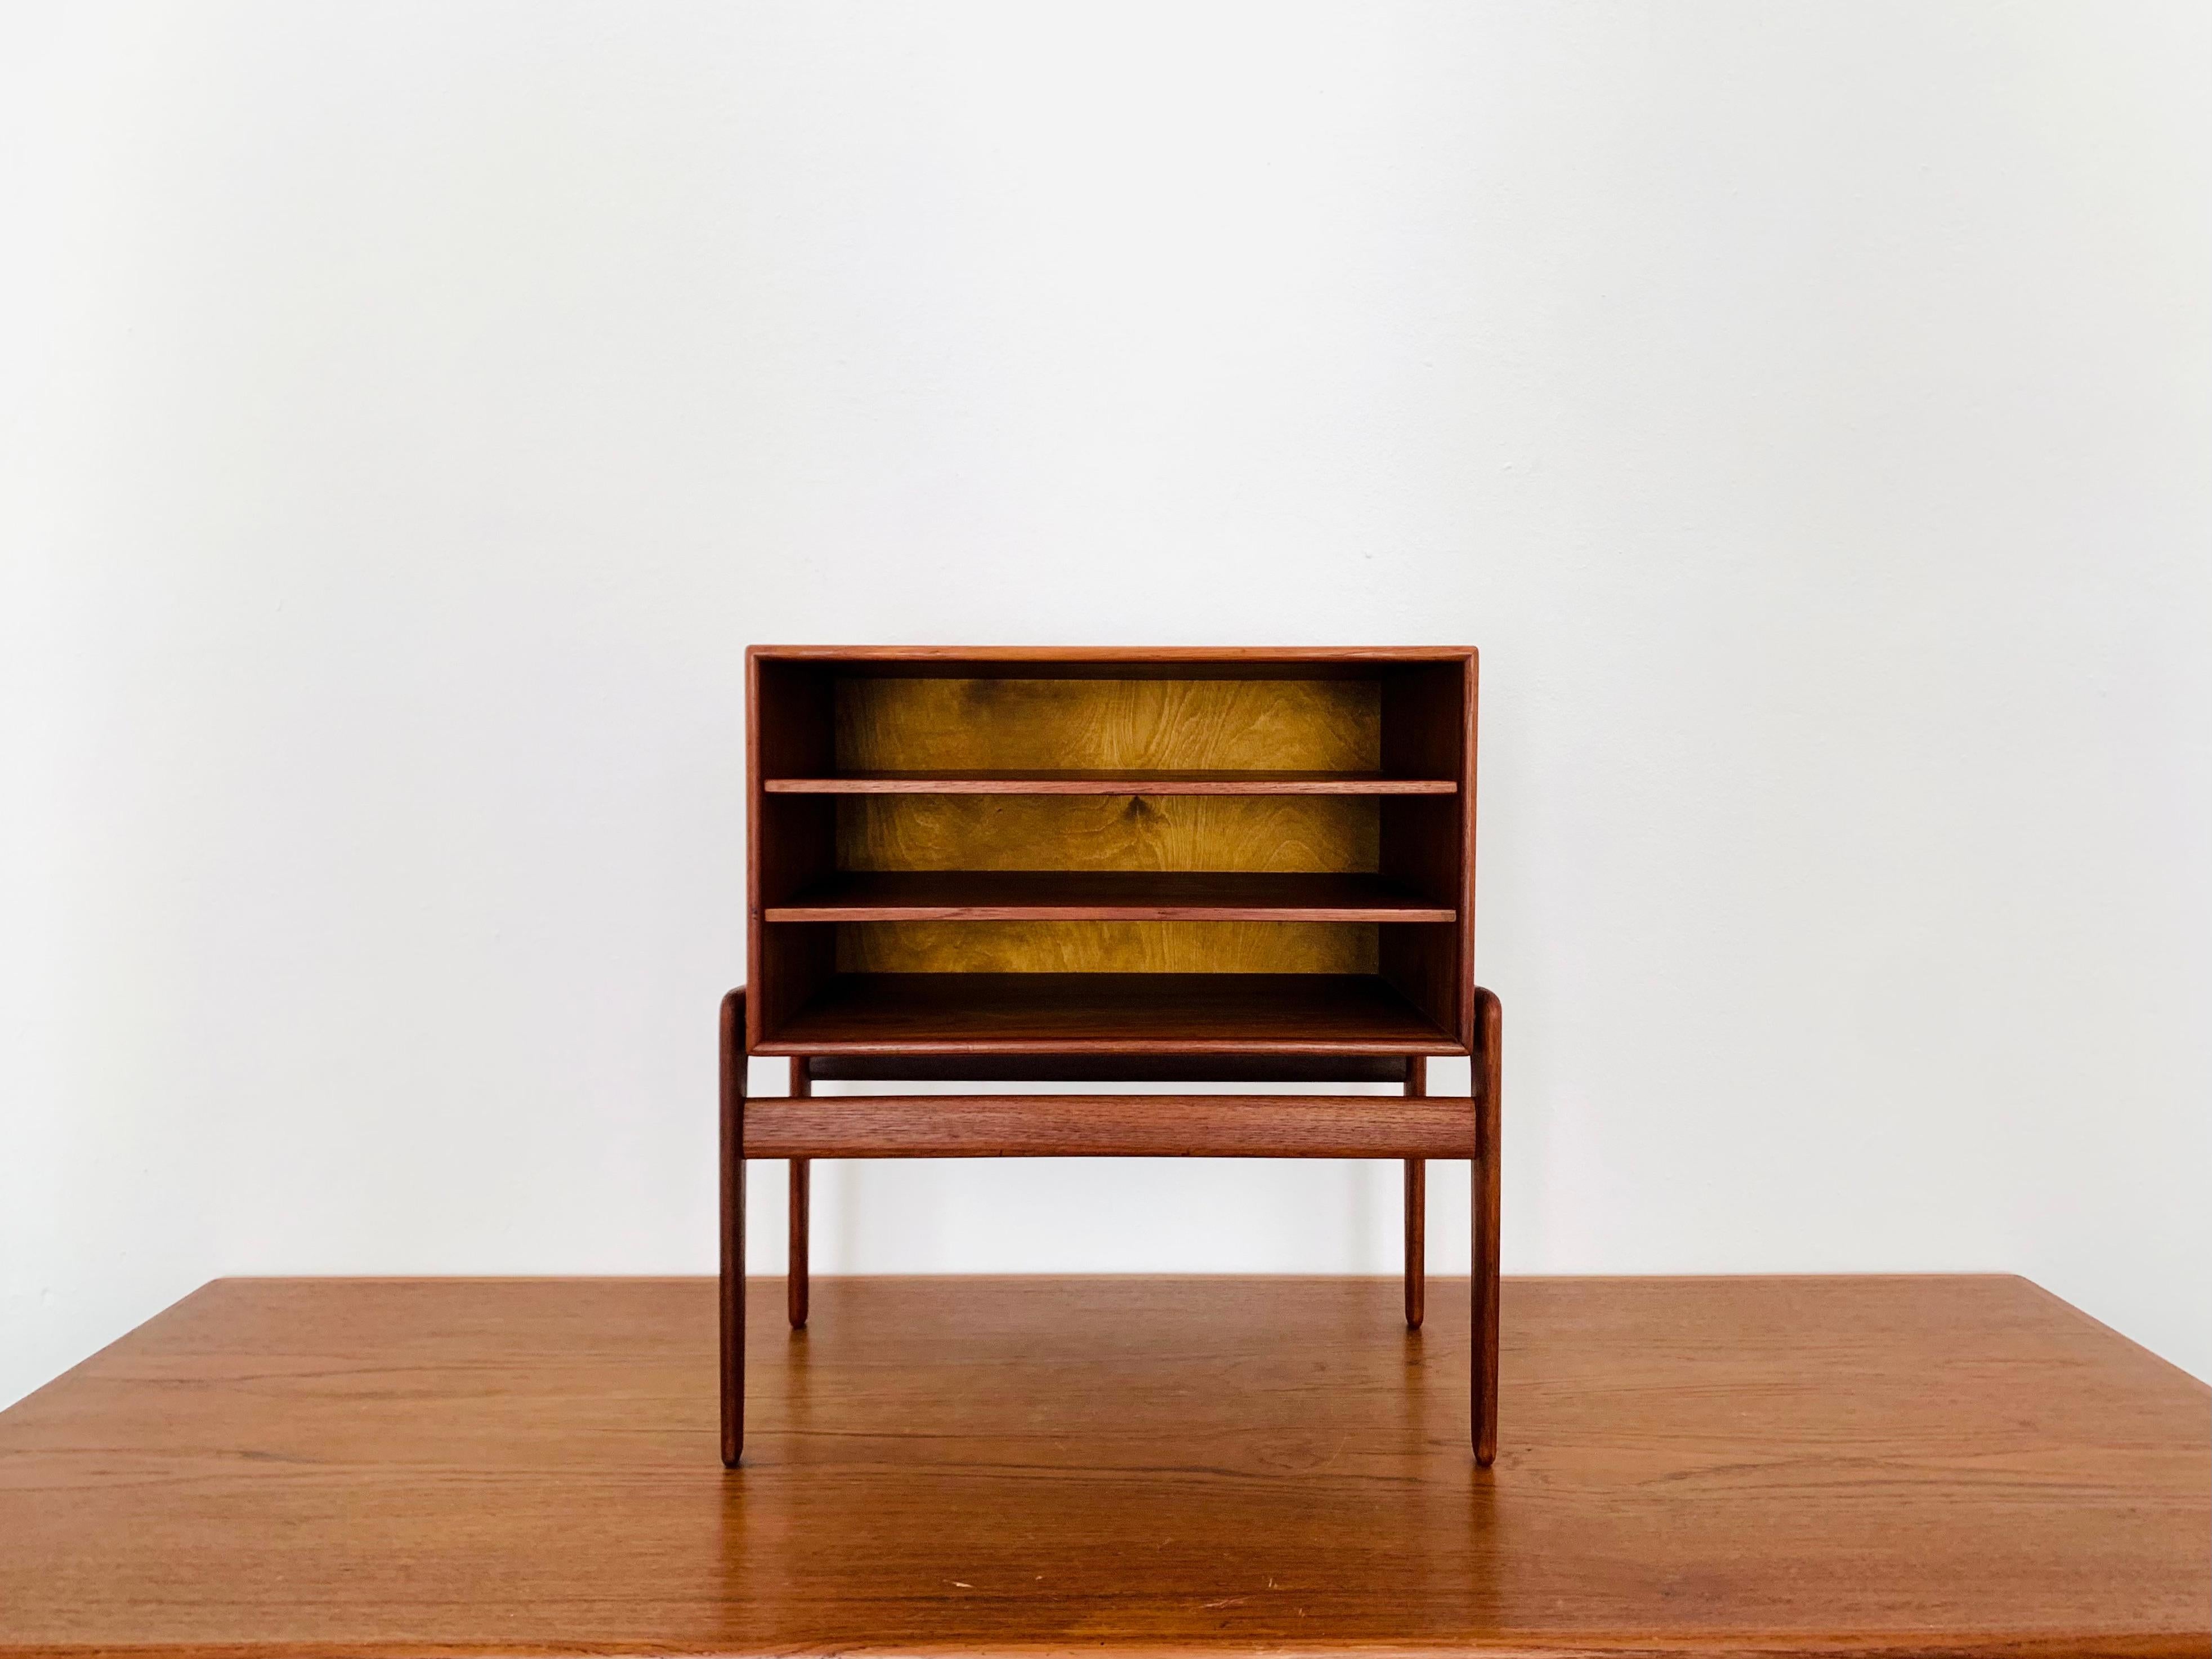 Exceptionnelle table de chevet danoise en teck des années 1960.
La qualité de fabrication et le design élégant font de ce petit meuble un véritable coup de cœur.
Une autre utilisation est bien sûr possible car ce meuble s'intègre à merveille dans